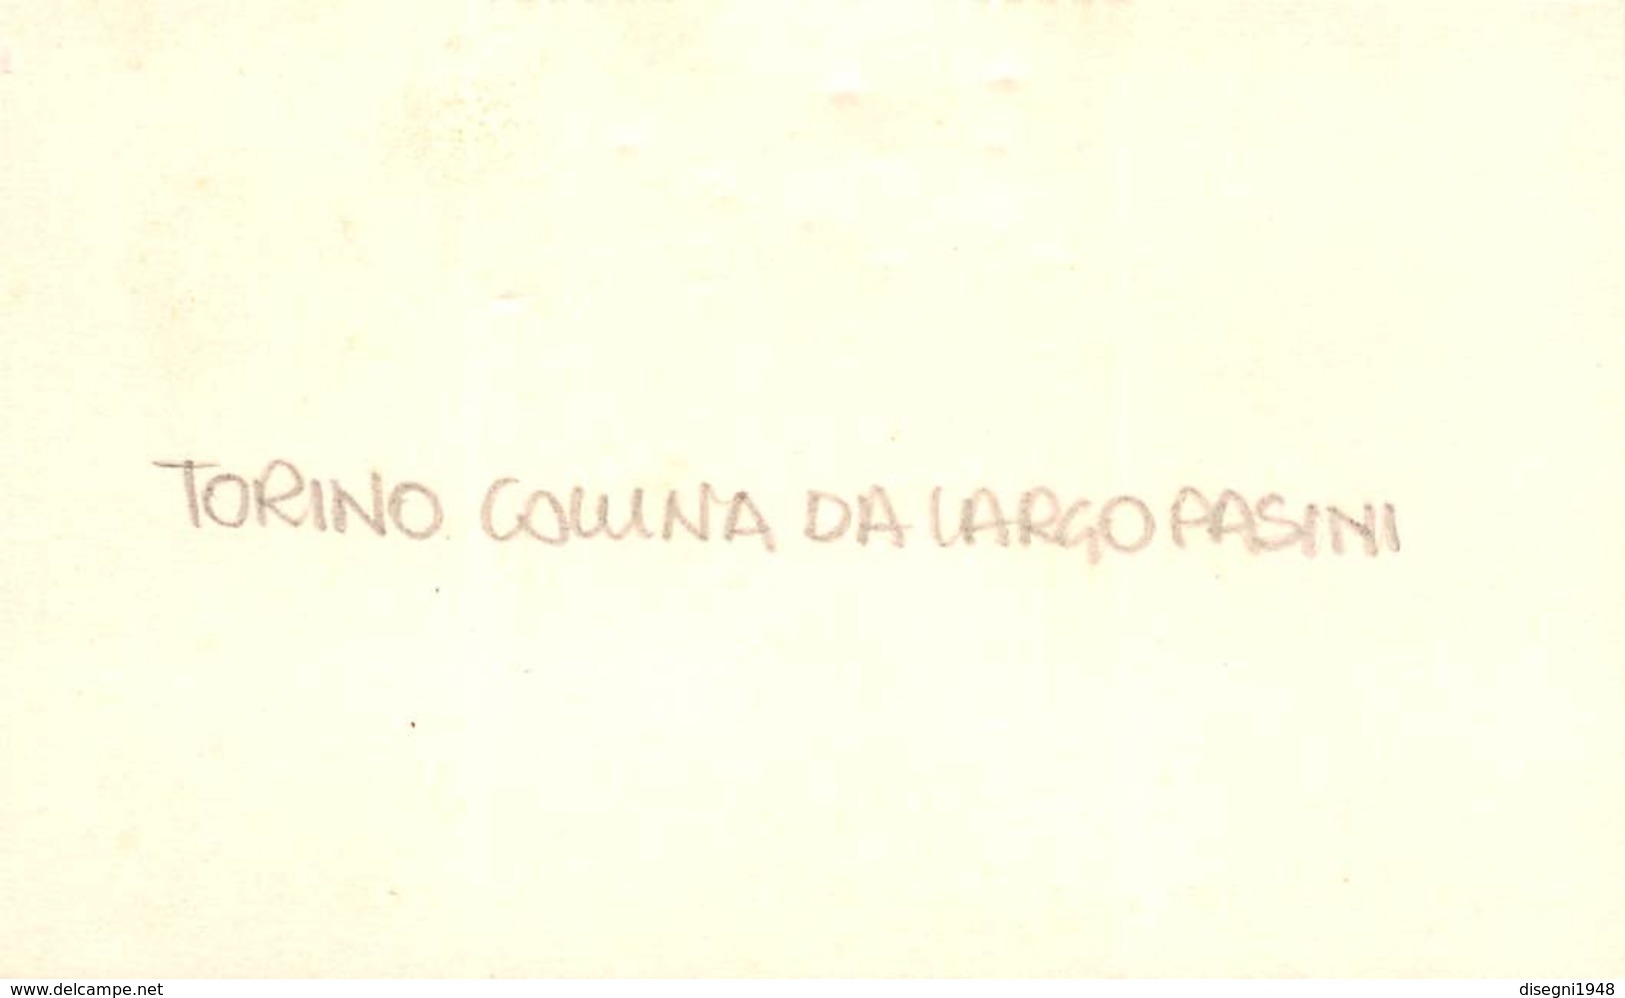 08950 "TORINO - COLLINA DA LARGO PASINI" ANNI '50 DEL XX SECOLO - FOTO ORIGINALE - Mostre, Esposizioni